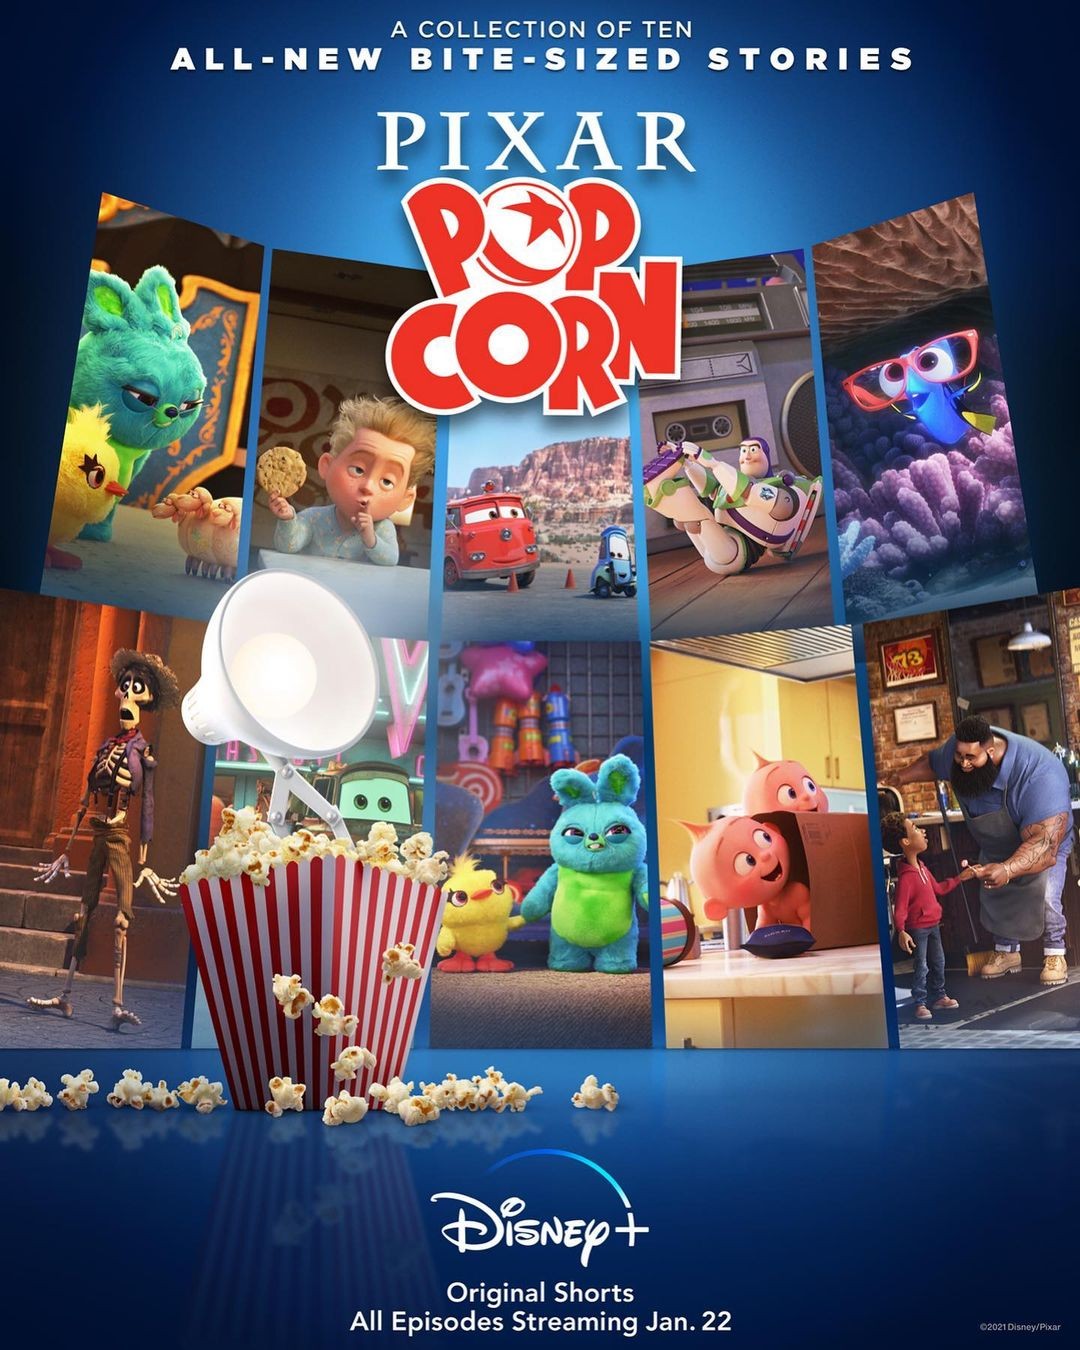 Disney 视频 6 99 包月全年订阅 69 99 Pixar 漫威等新老经典影视 北美省钱快报